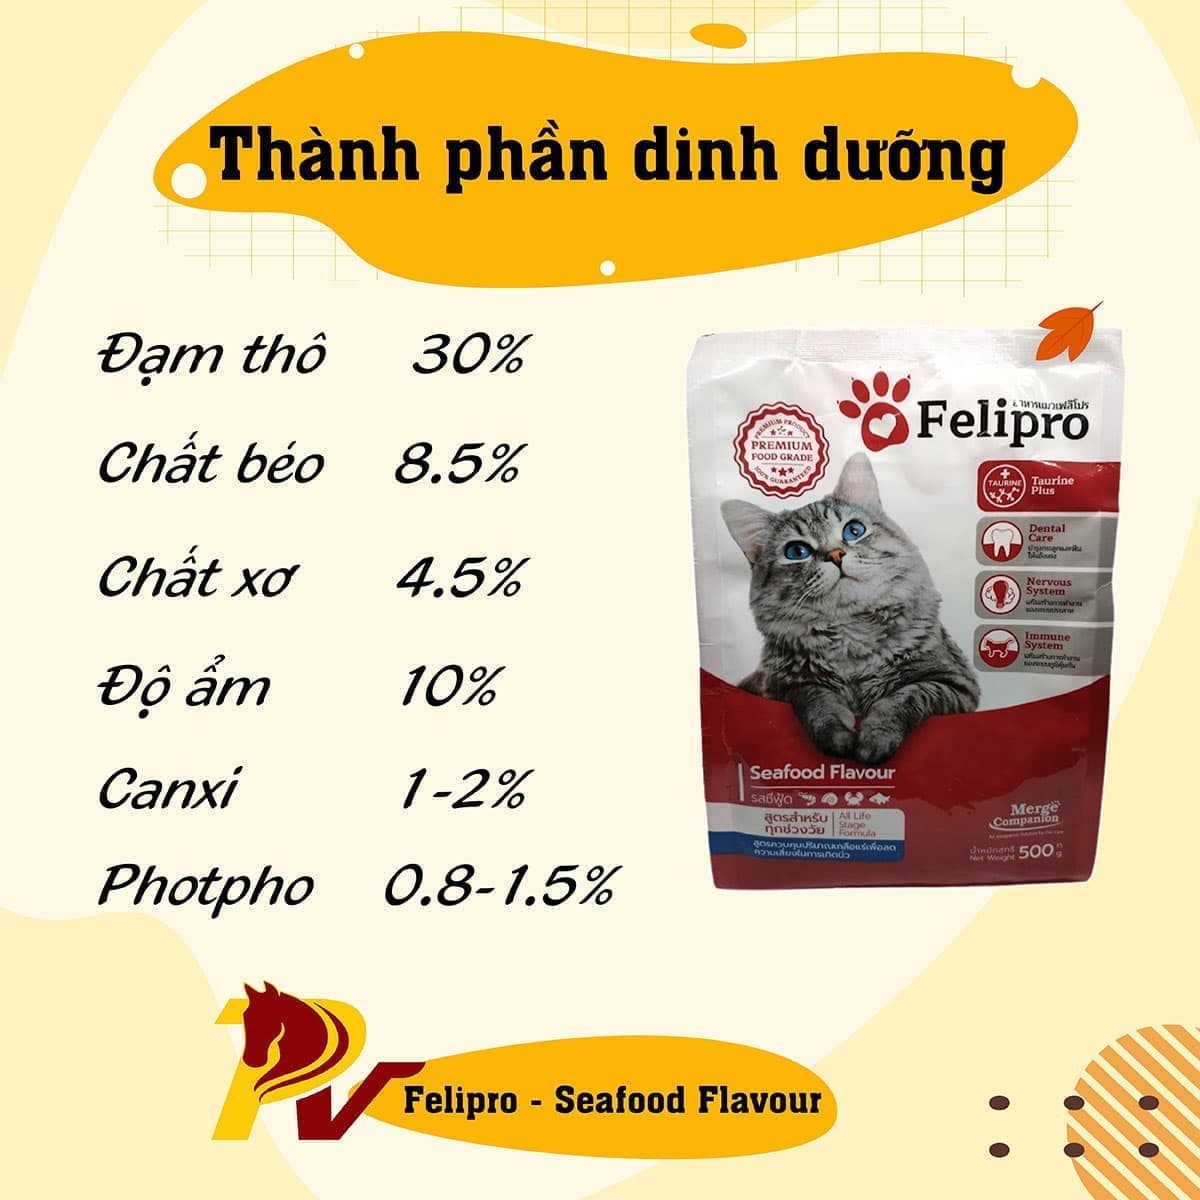 thành phần dinh dưỡng của felipro seafood flavour